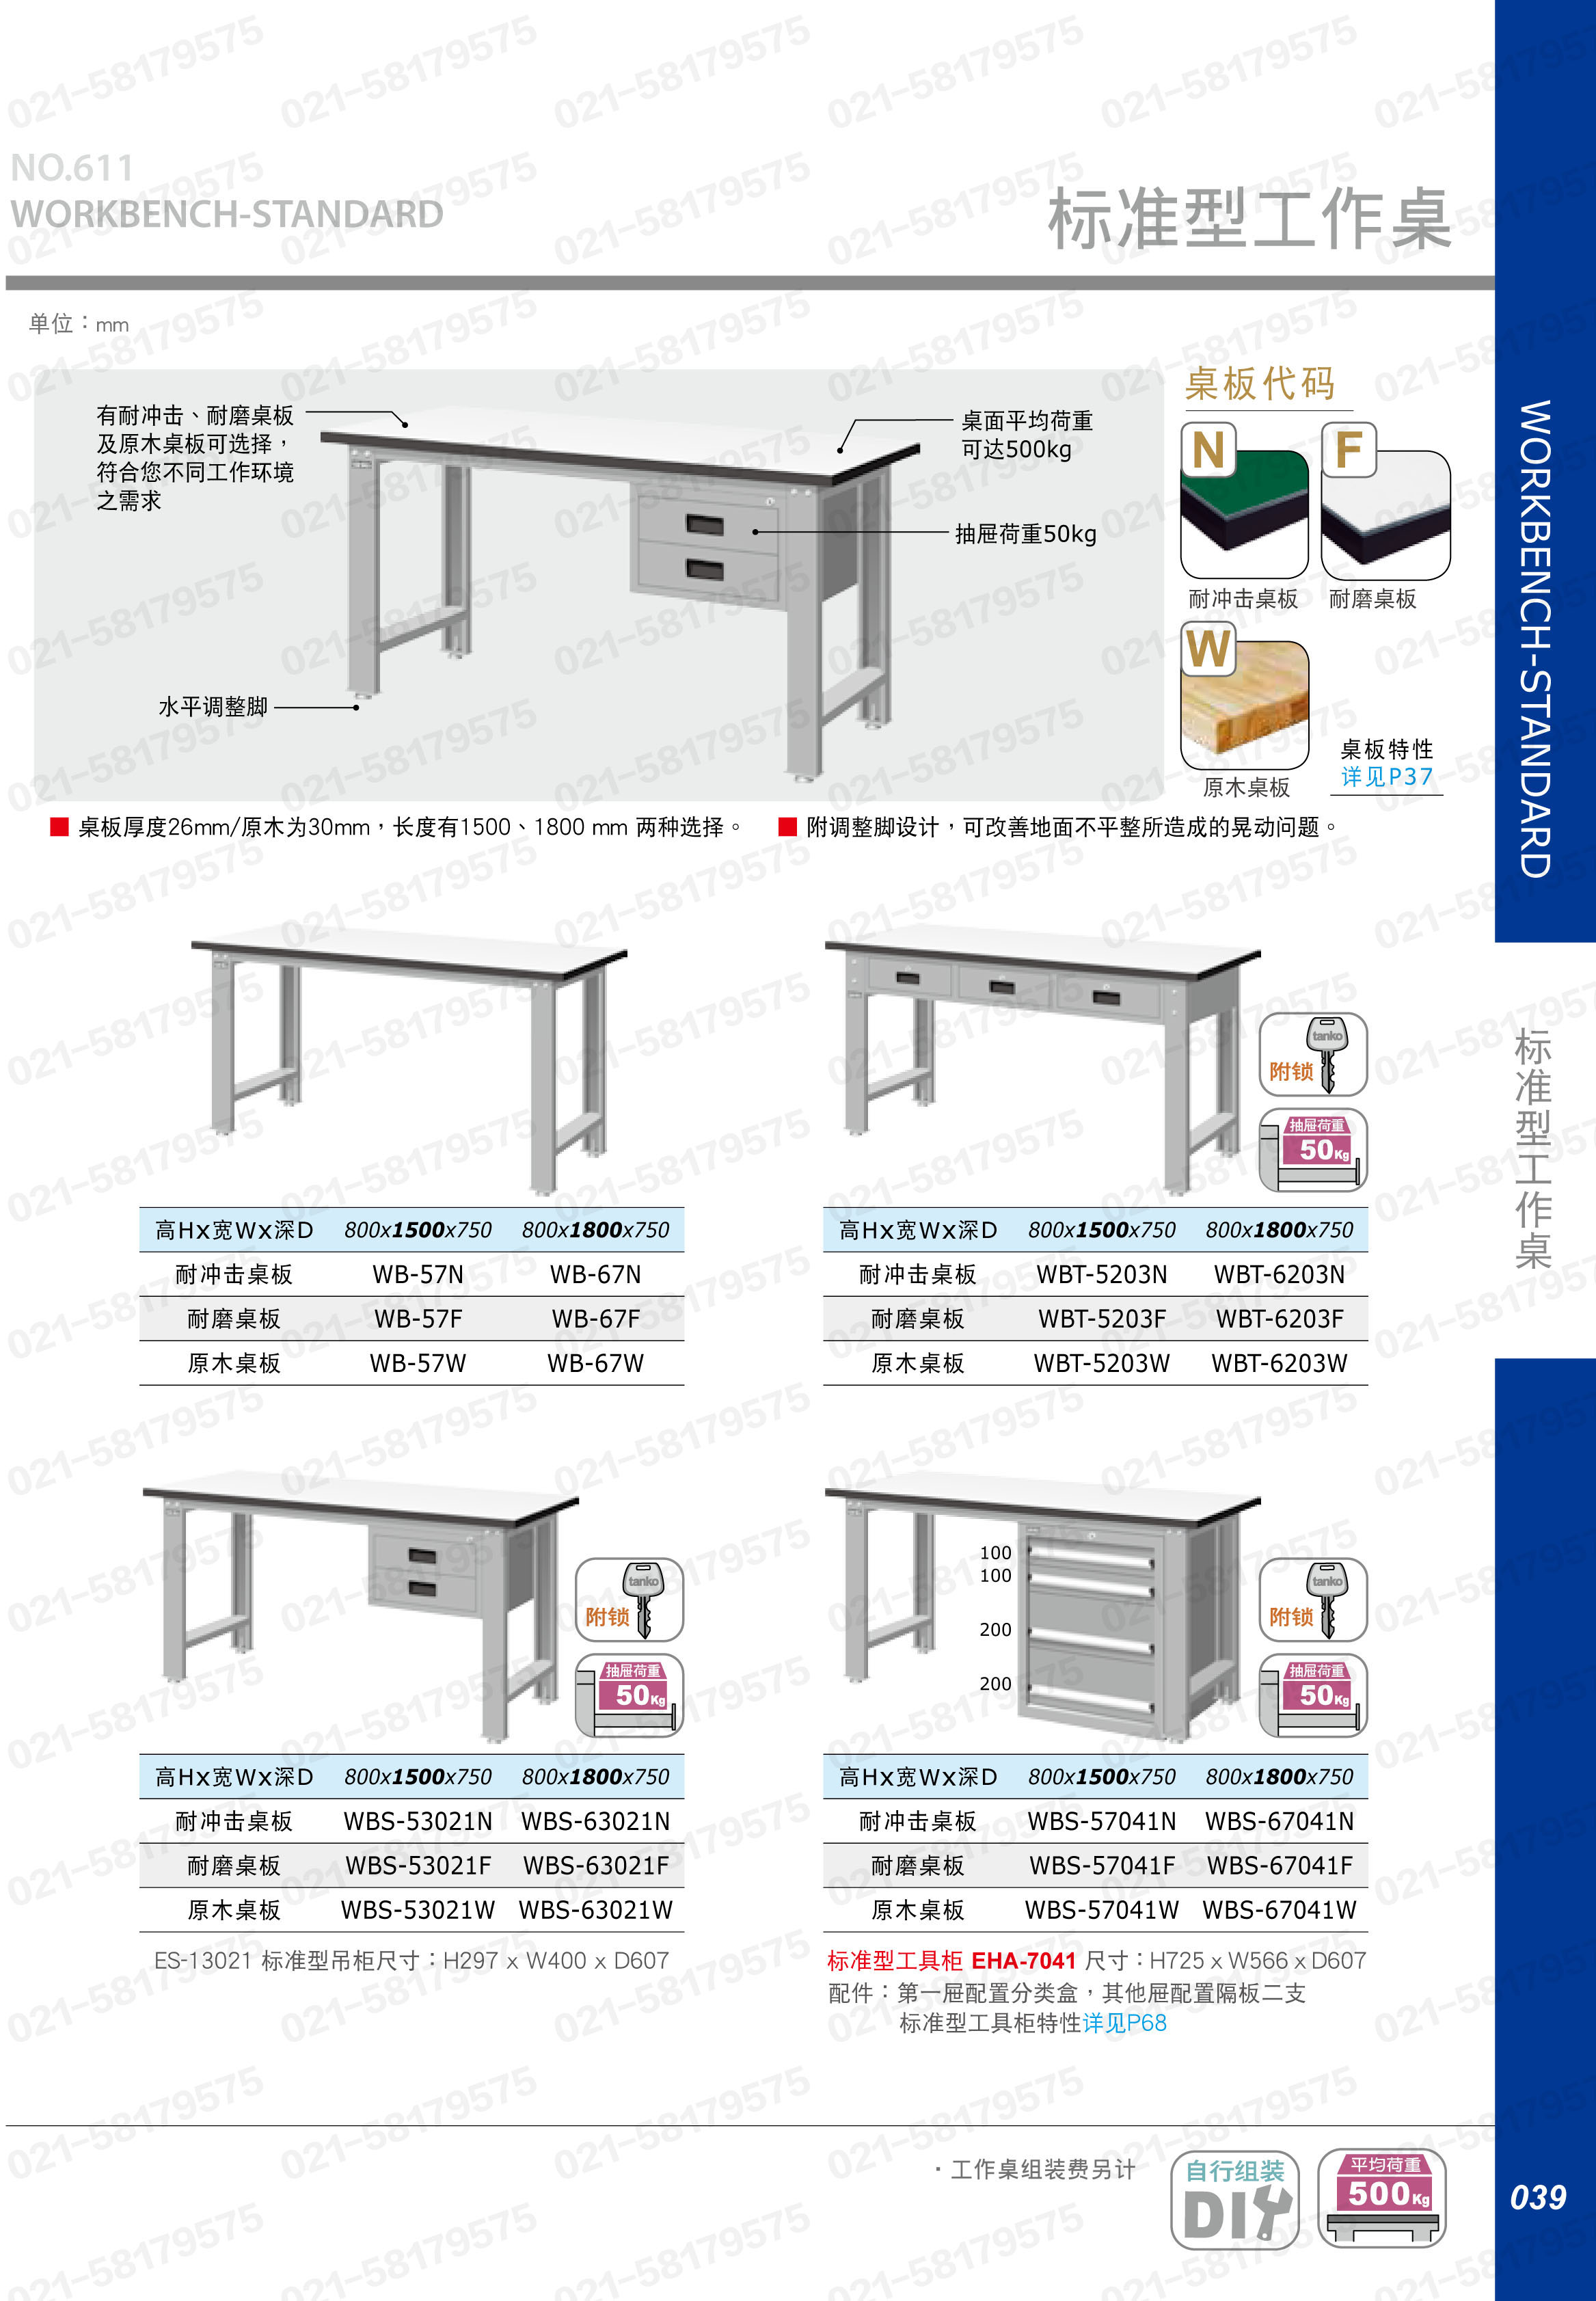 轻型工作桌1800×750×800mm 耐磨桌板 带四抽边柜,WBS-67041F,5D2949